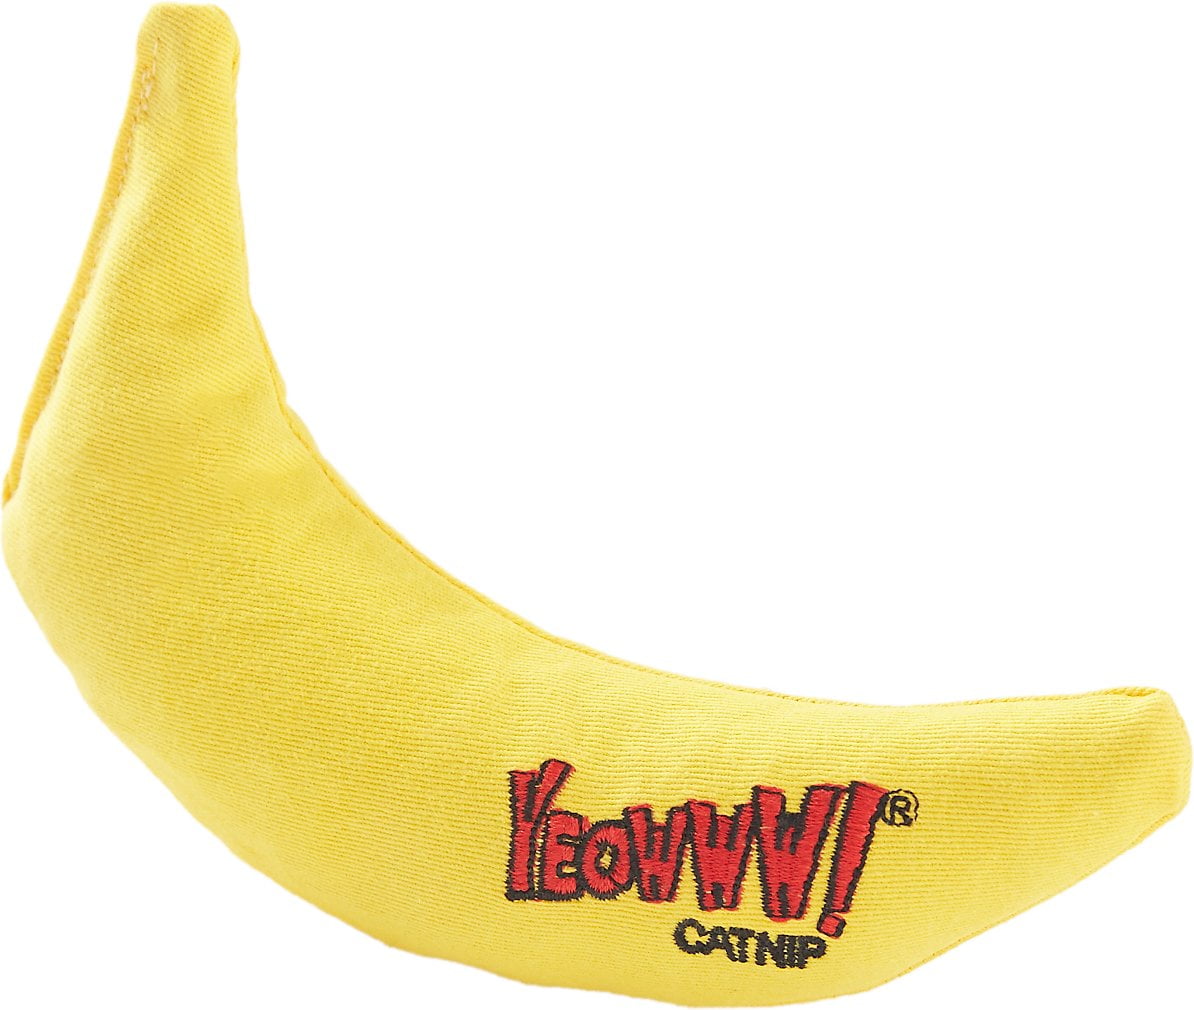 Catnip Toy Yellow Banana 